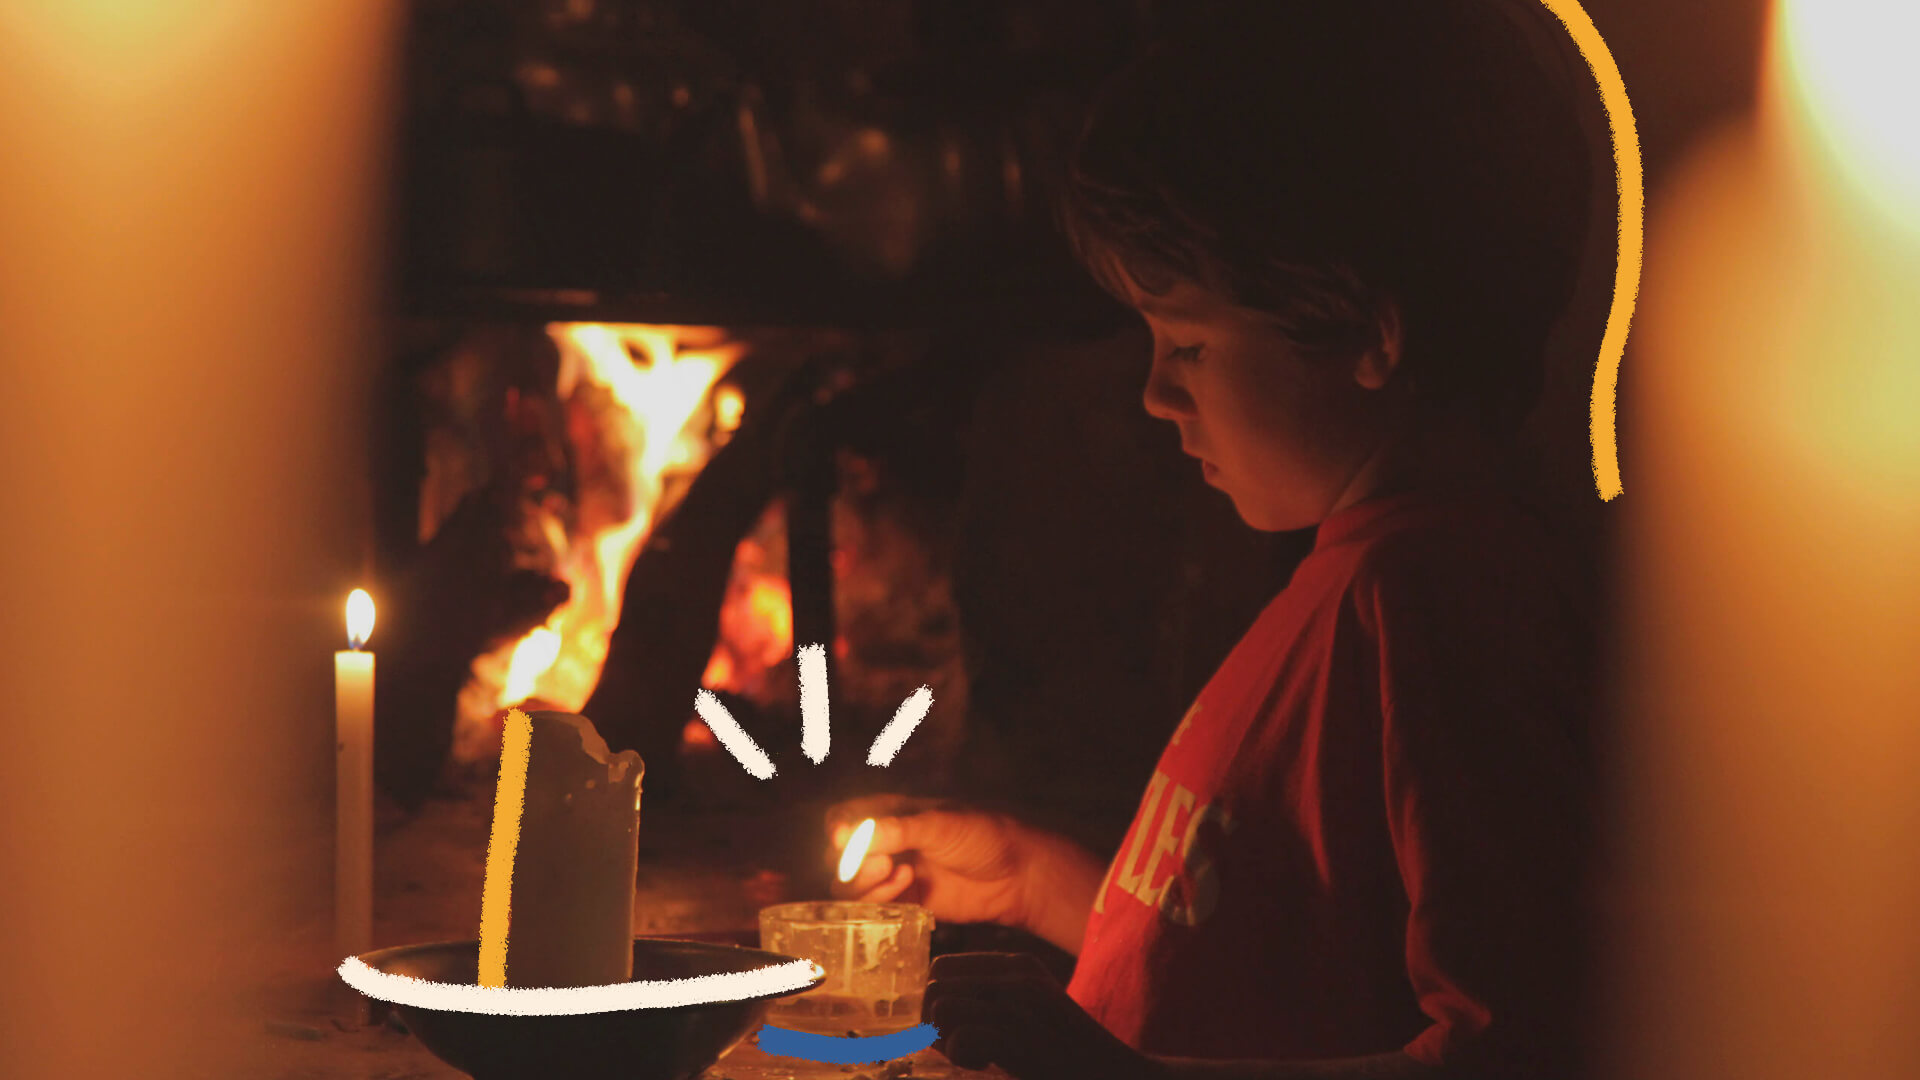 Porque brincar com fogo deve fazer parte da infância?